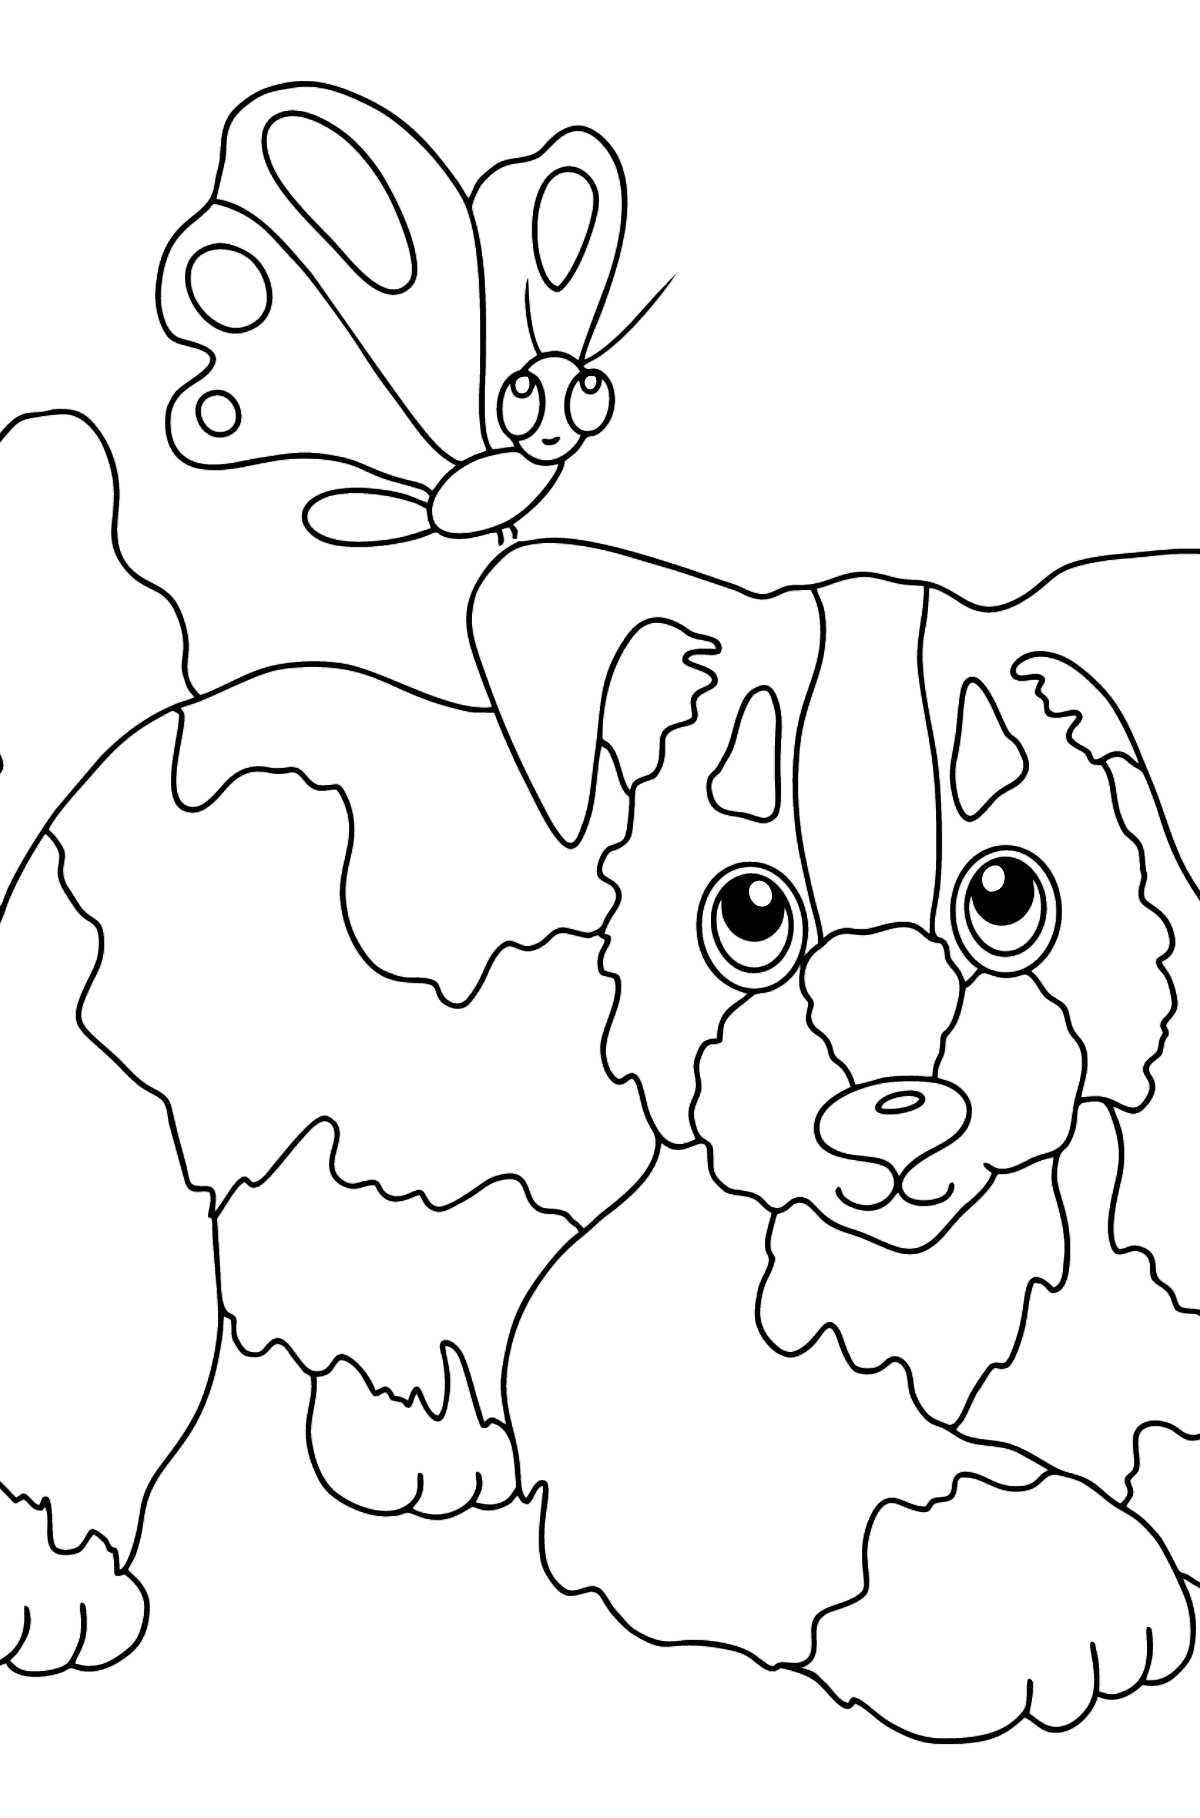 Desenho de cachorro e borboleta para colorir (fácil) - Imagens para Colorir para Crianças